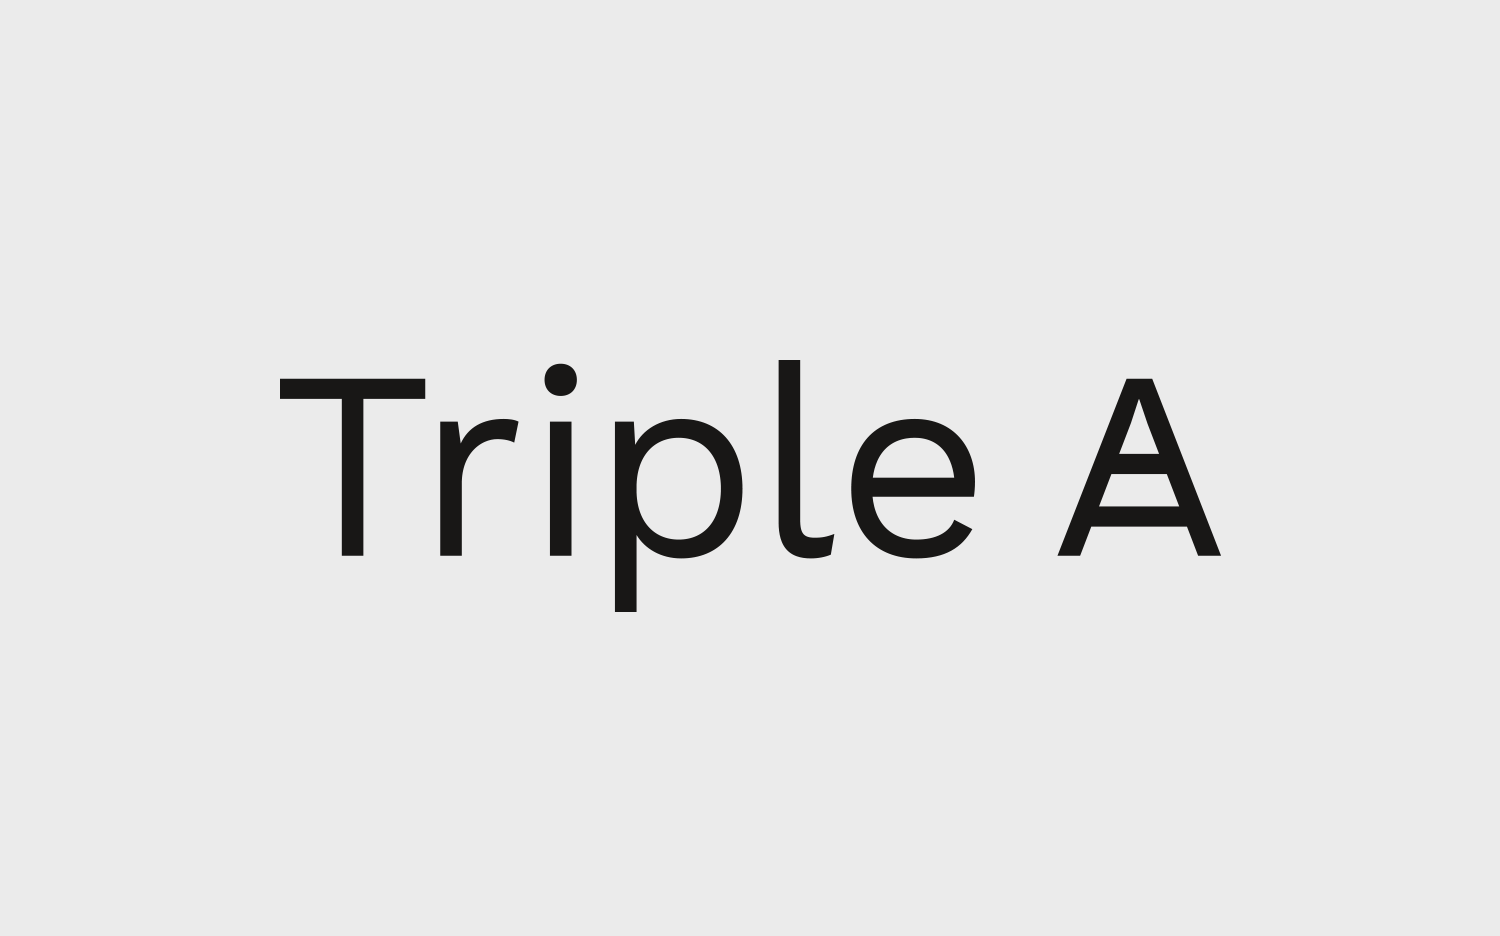 Triple A